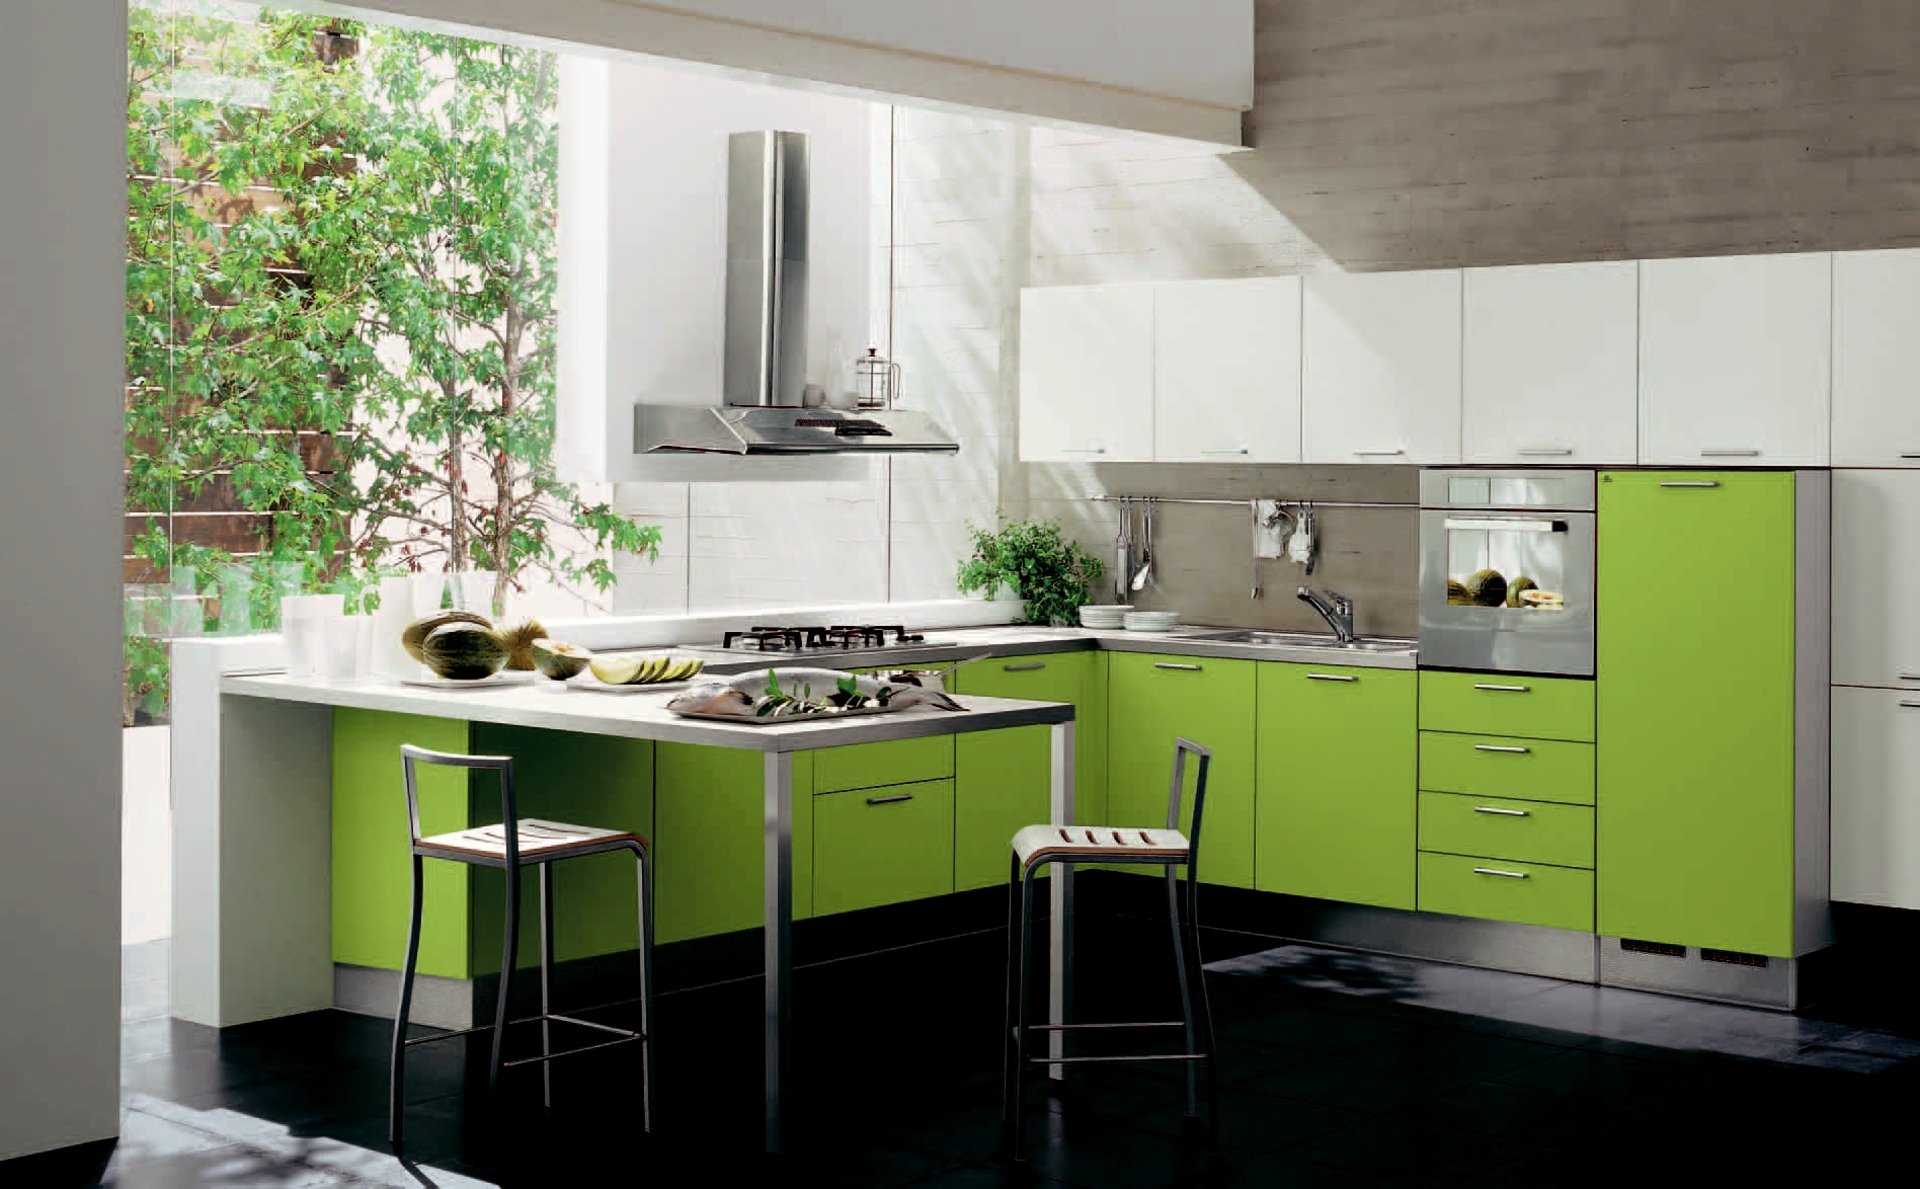 Ната кухни. Egger Фьорд зеленый кухня. Красивый кухонный гарнитур. Кухня зеленого цвета. Кухня в зеленых тонах.